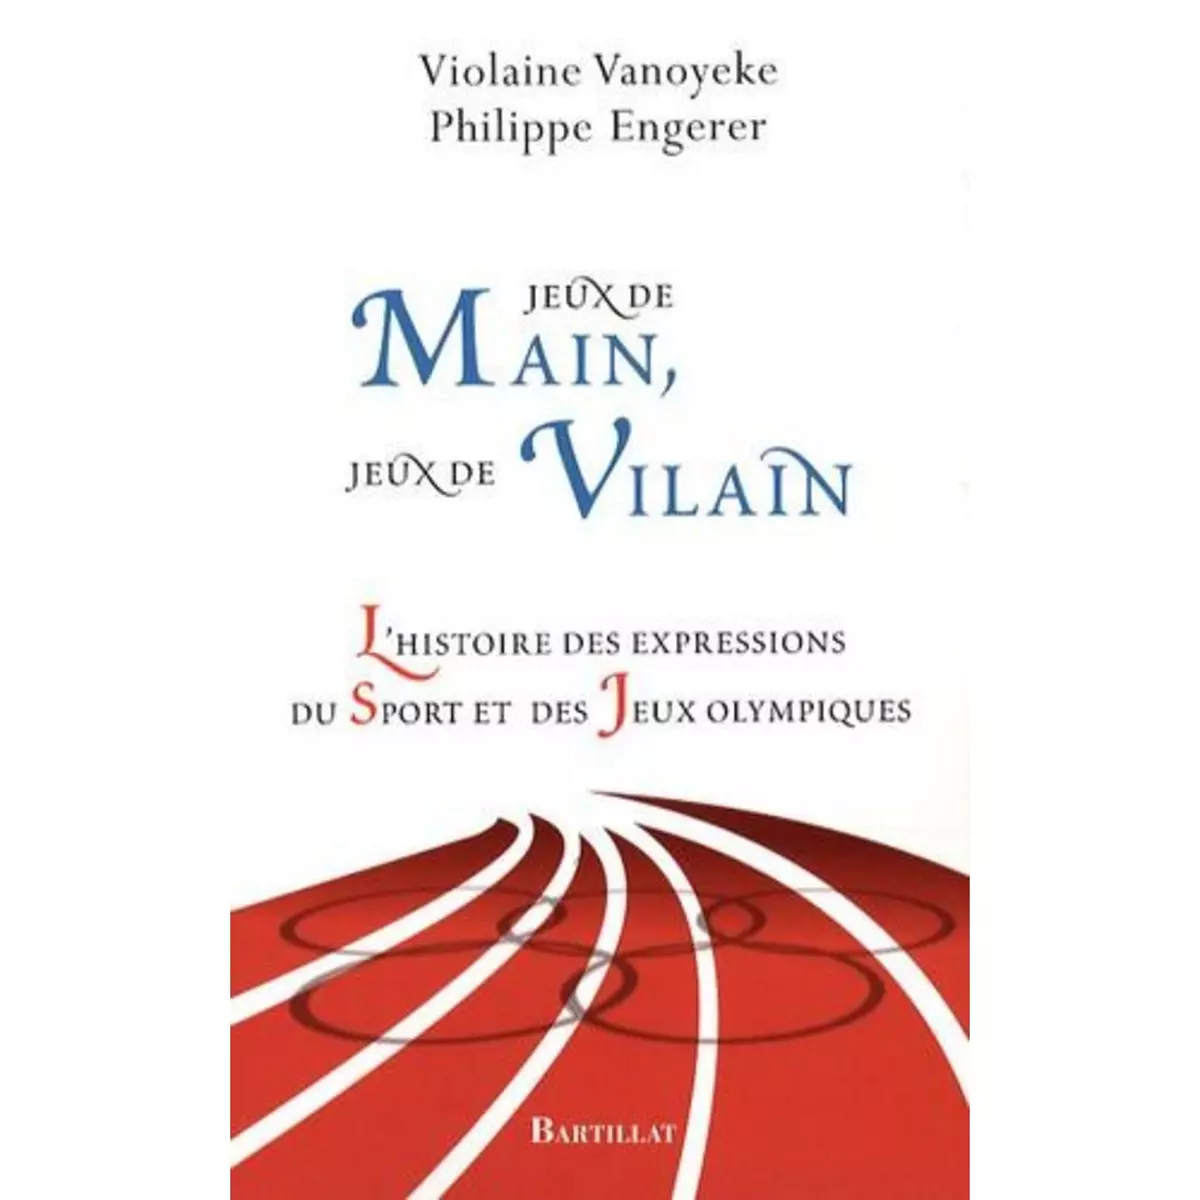  JEUX DE MAIN, JEUX DE VILAIN. L'HISTOIRE DES EXPRESSIONS DU SPORT ET DES JEUX OLYMPIQUES, Vanoyeke Violaine